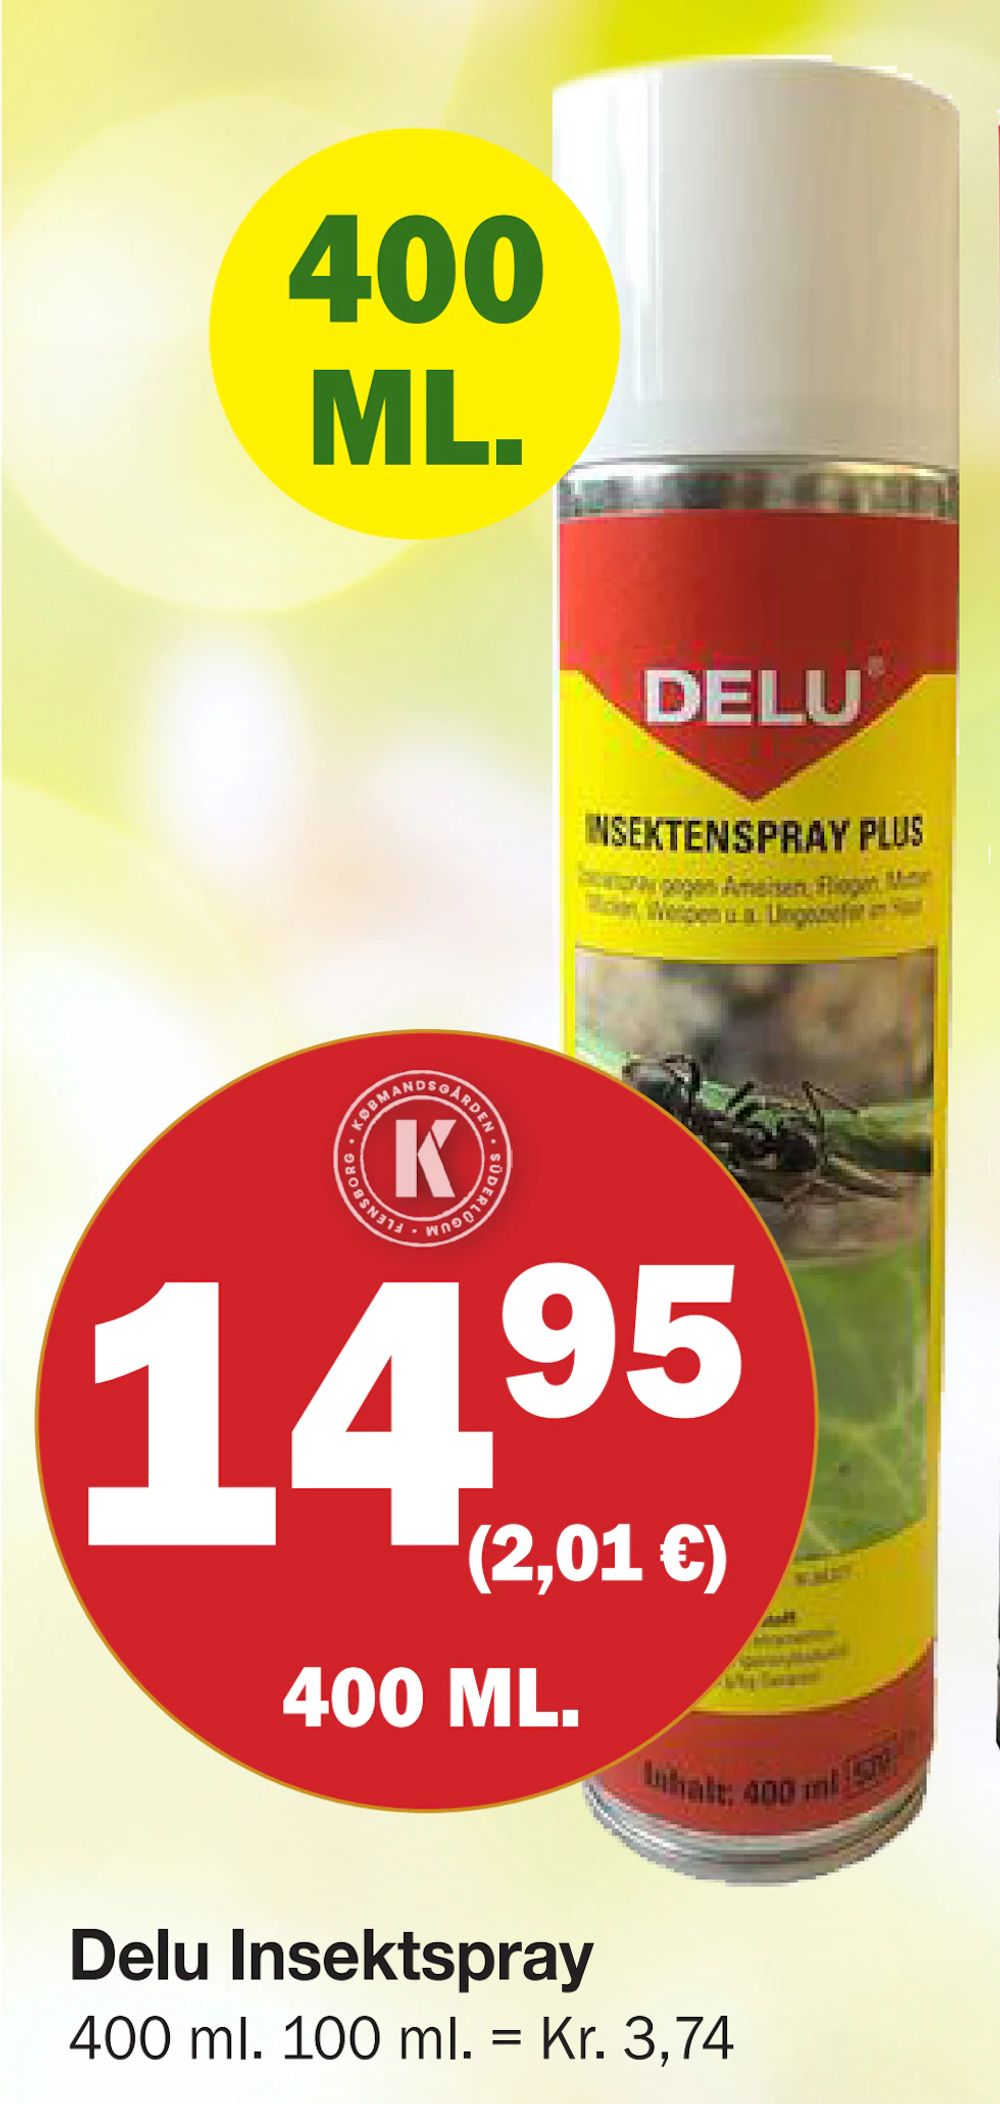 Tilbud på Delu Insektspray fra Købmandsgården til 14,95 kr.